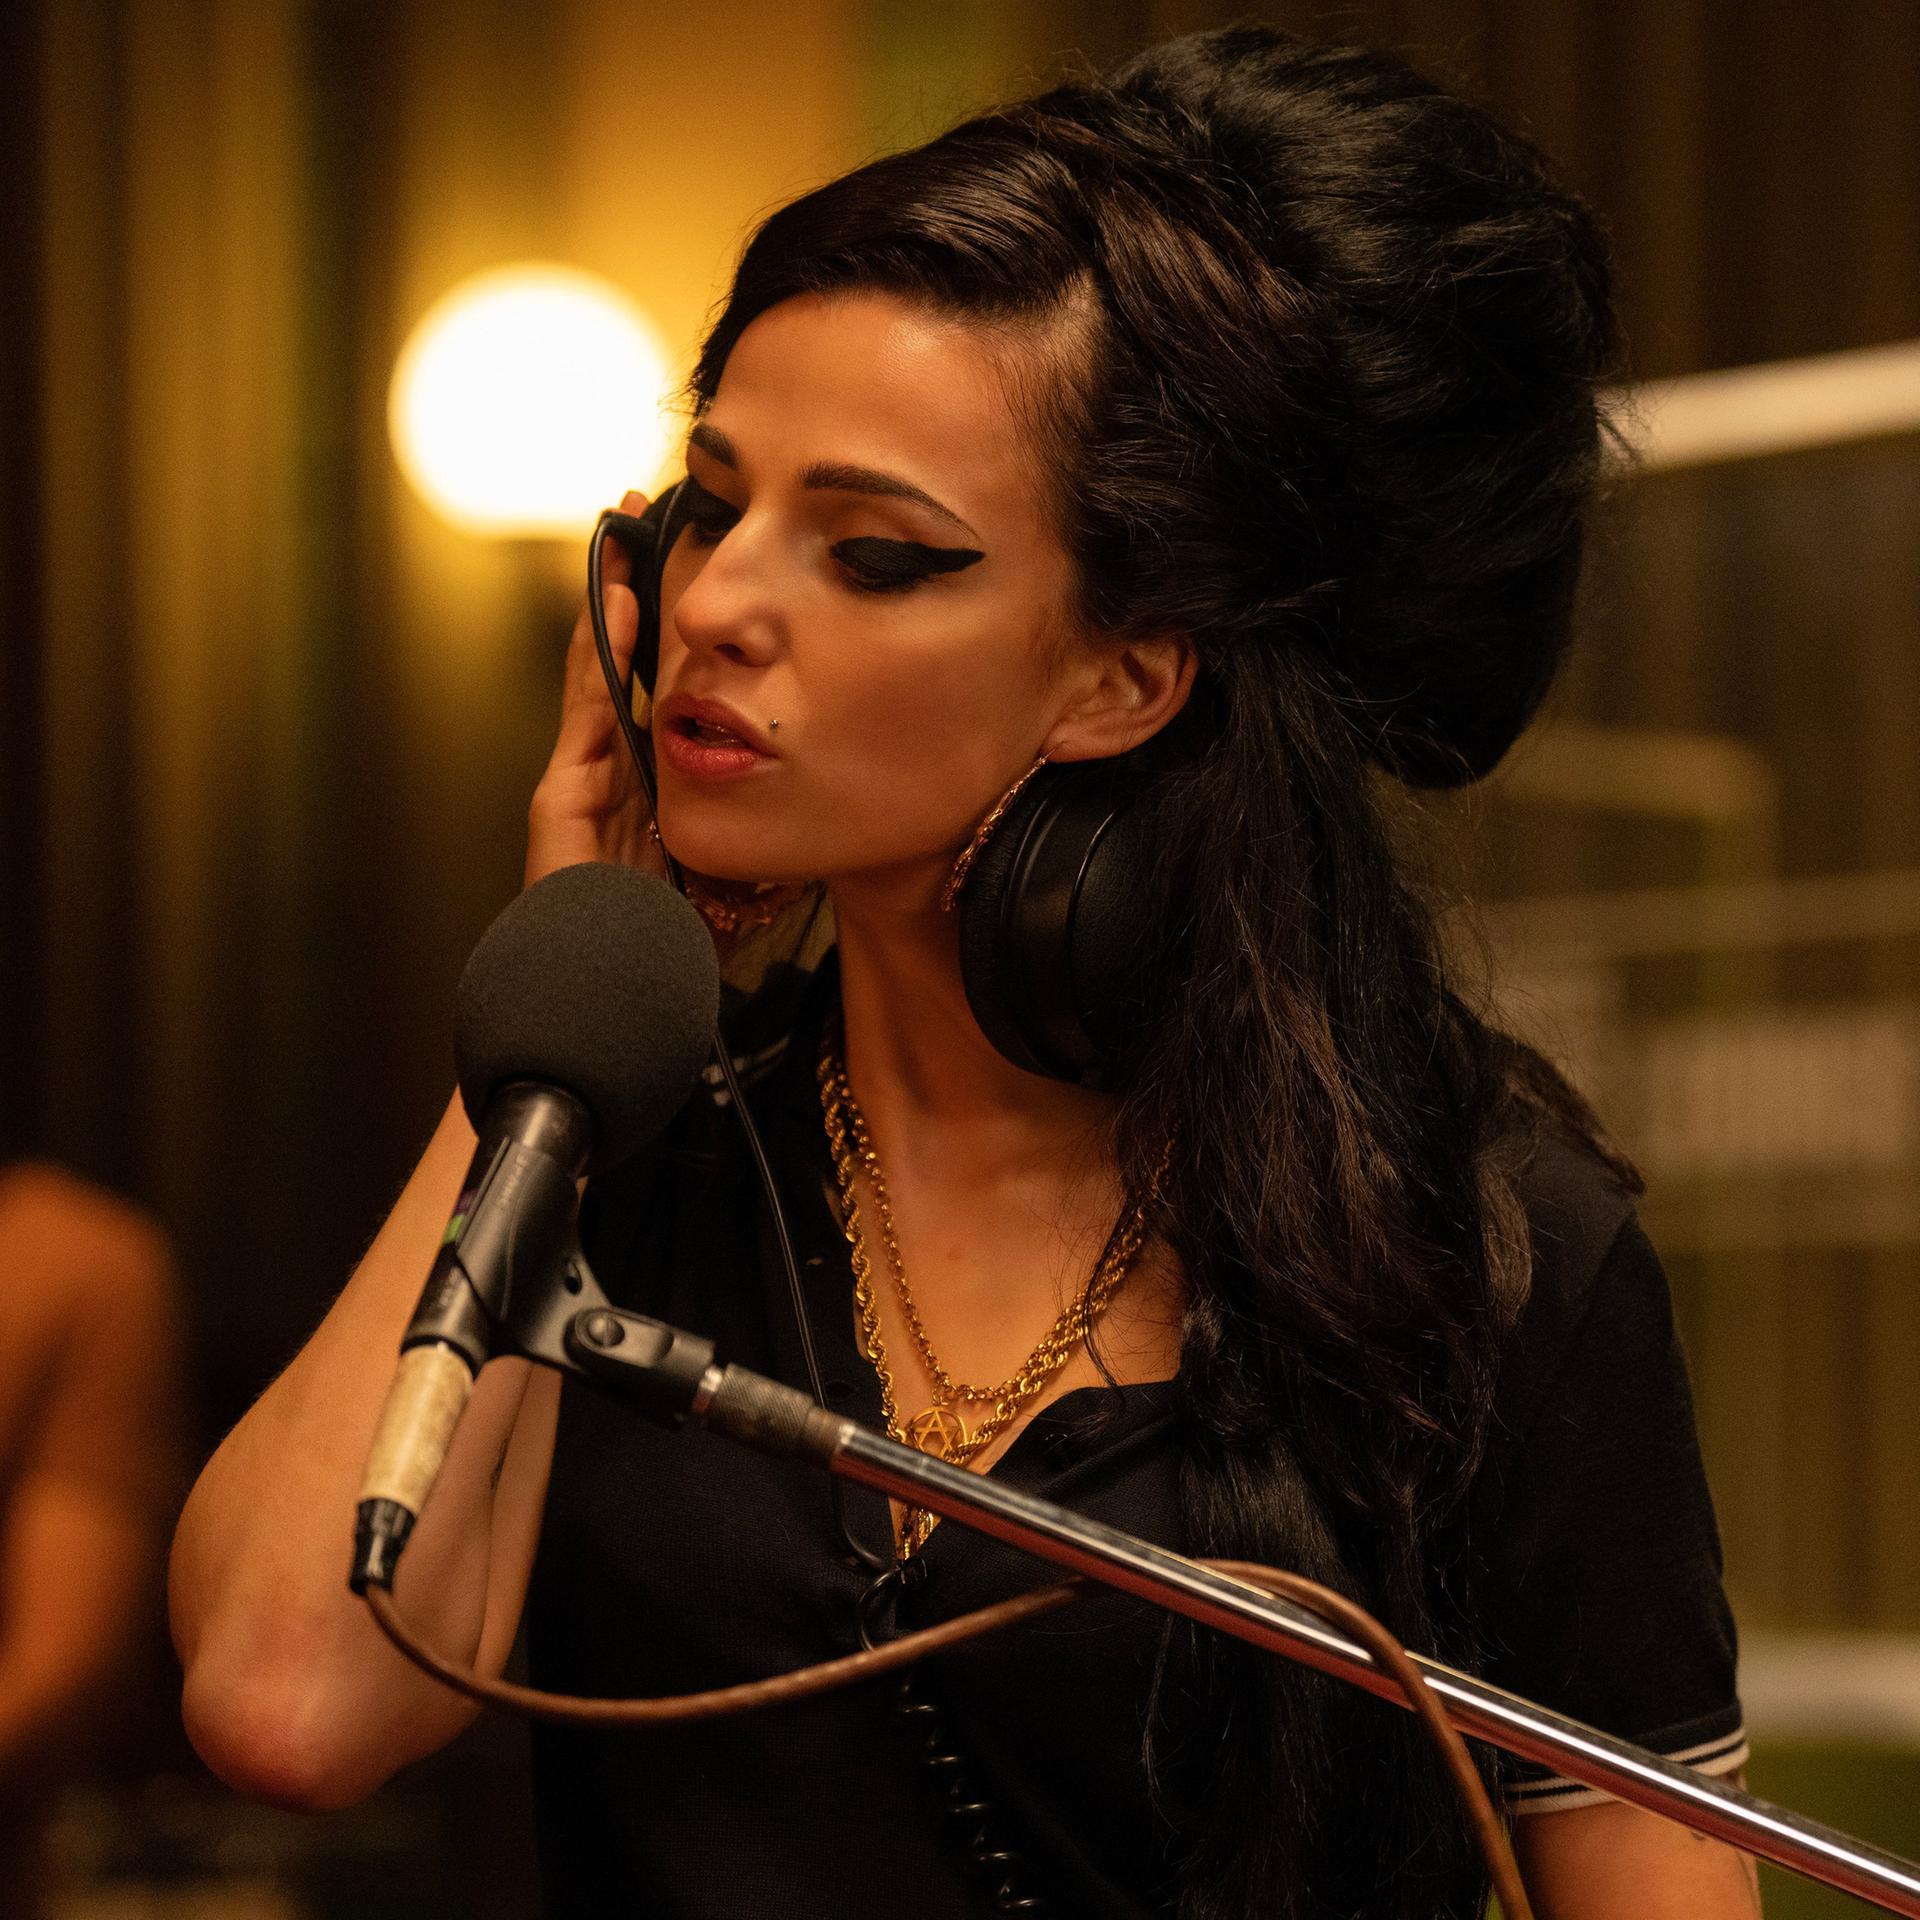 Amy Winehouse und Co. - Wie verfilmt man ein Leben so, dass sich niemand im Grab umdreht?